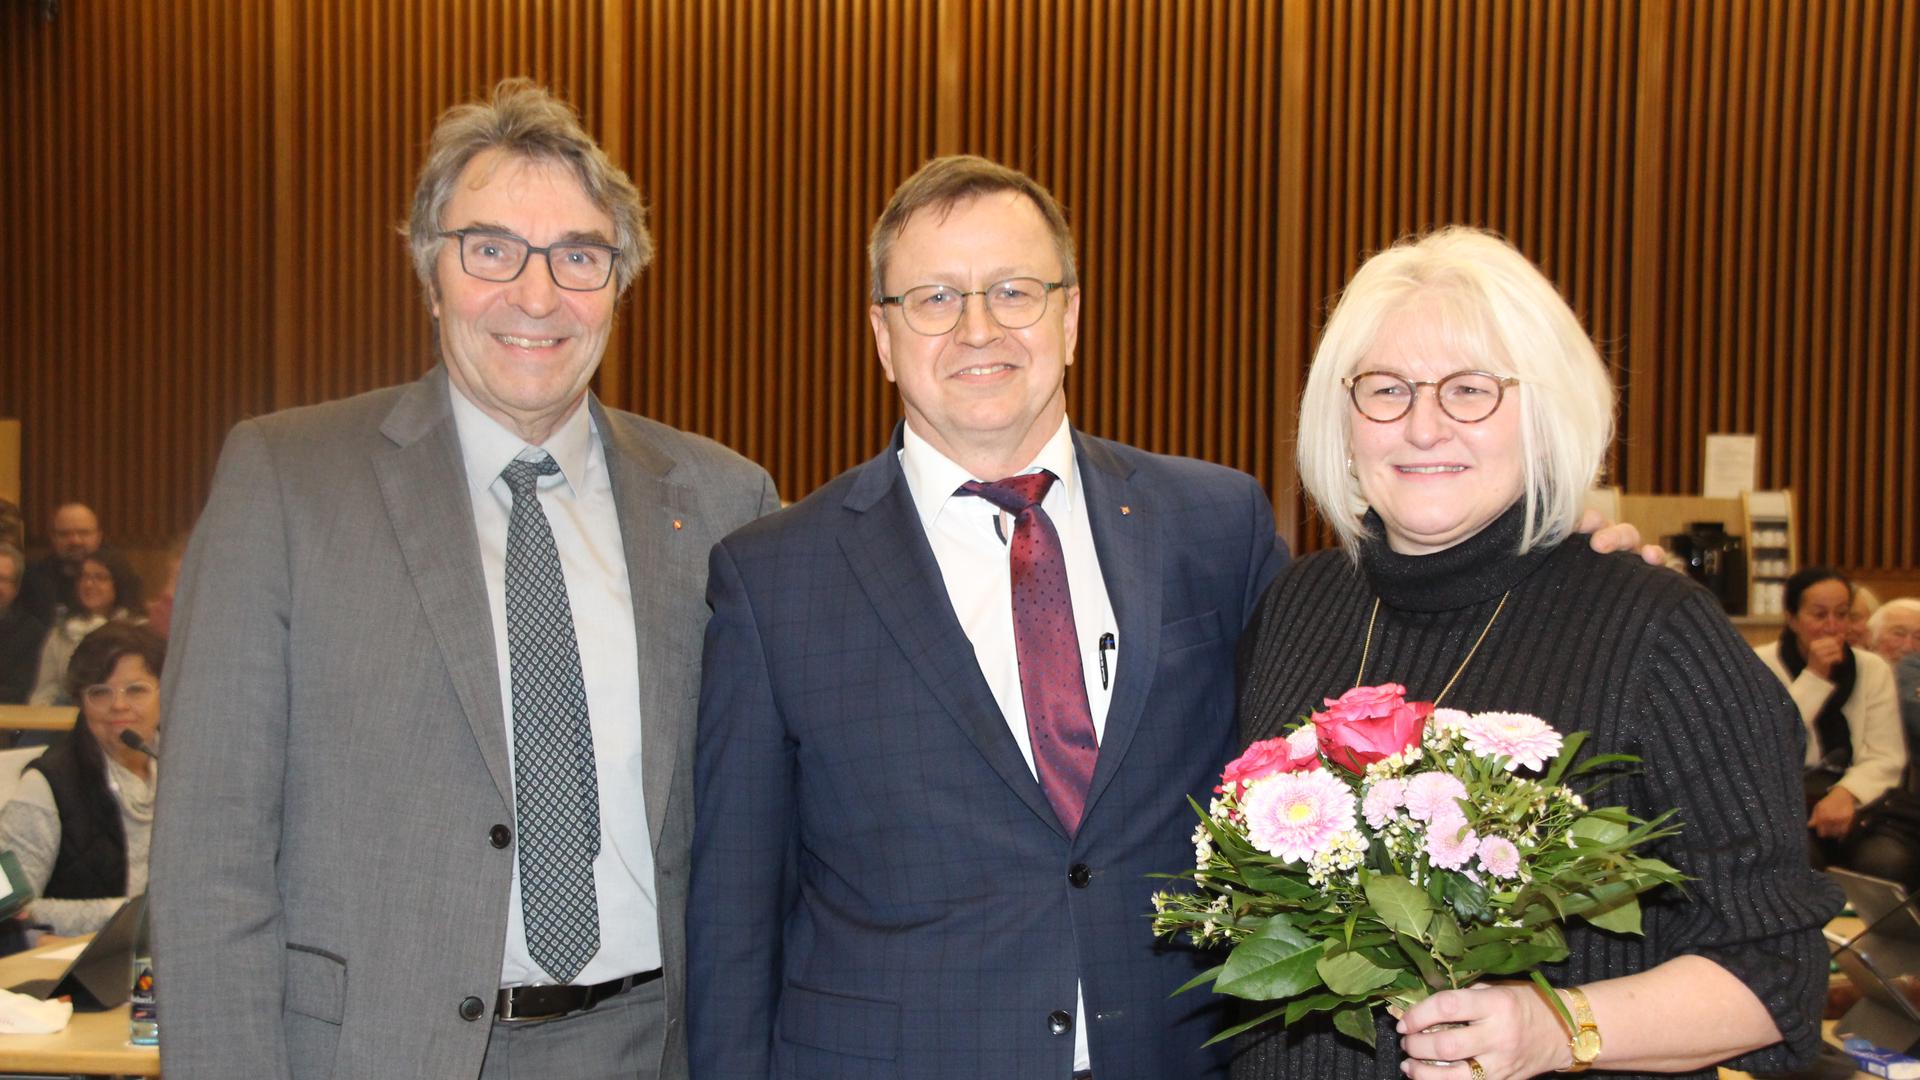 Freude über die Wiederwahl: Michael Pfeiffer (Mitte) mit Ehefrau Vera und Oberbürgermeister Christof Florus im Bürgersaal des Gaggenauer Rathauses.